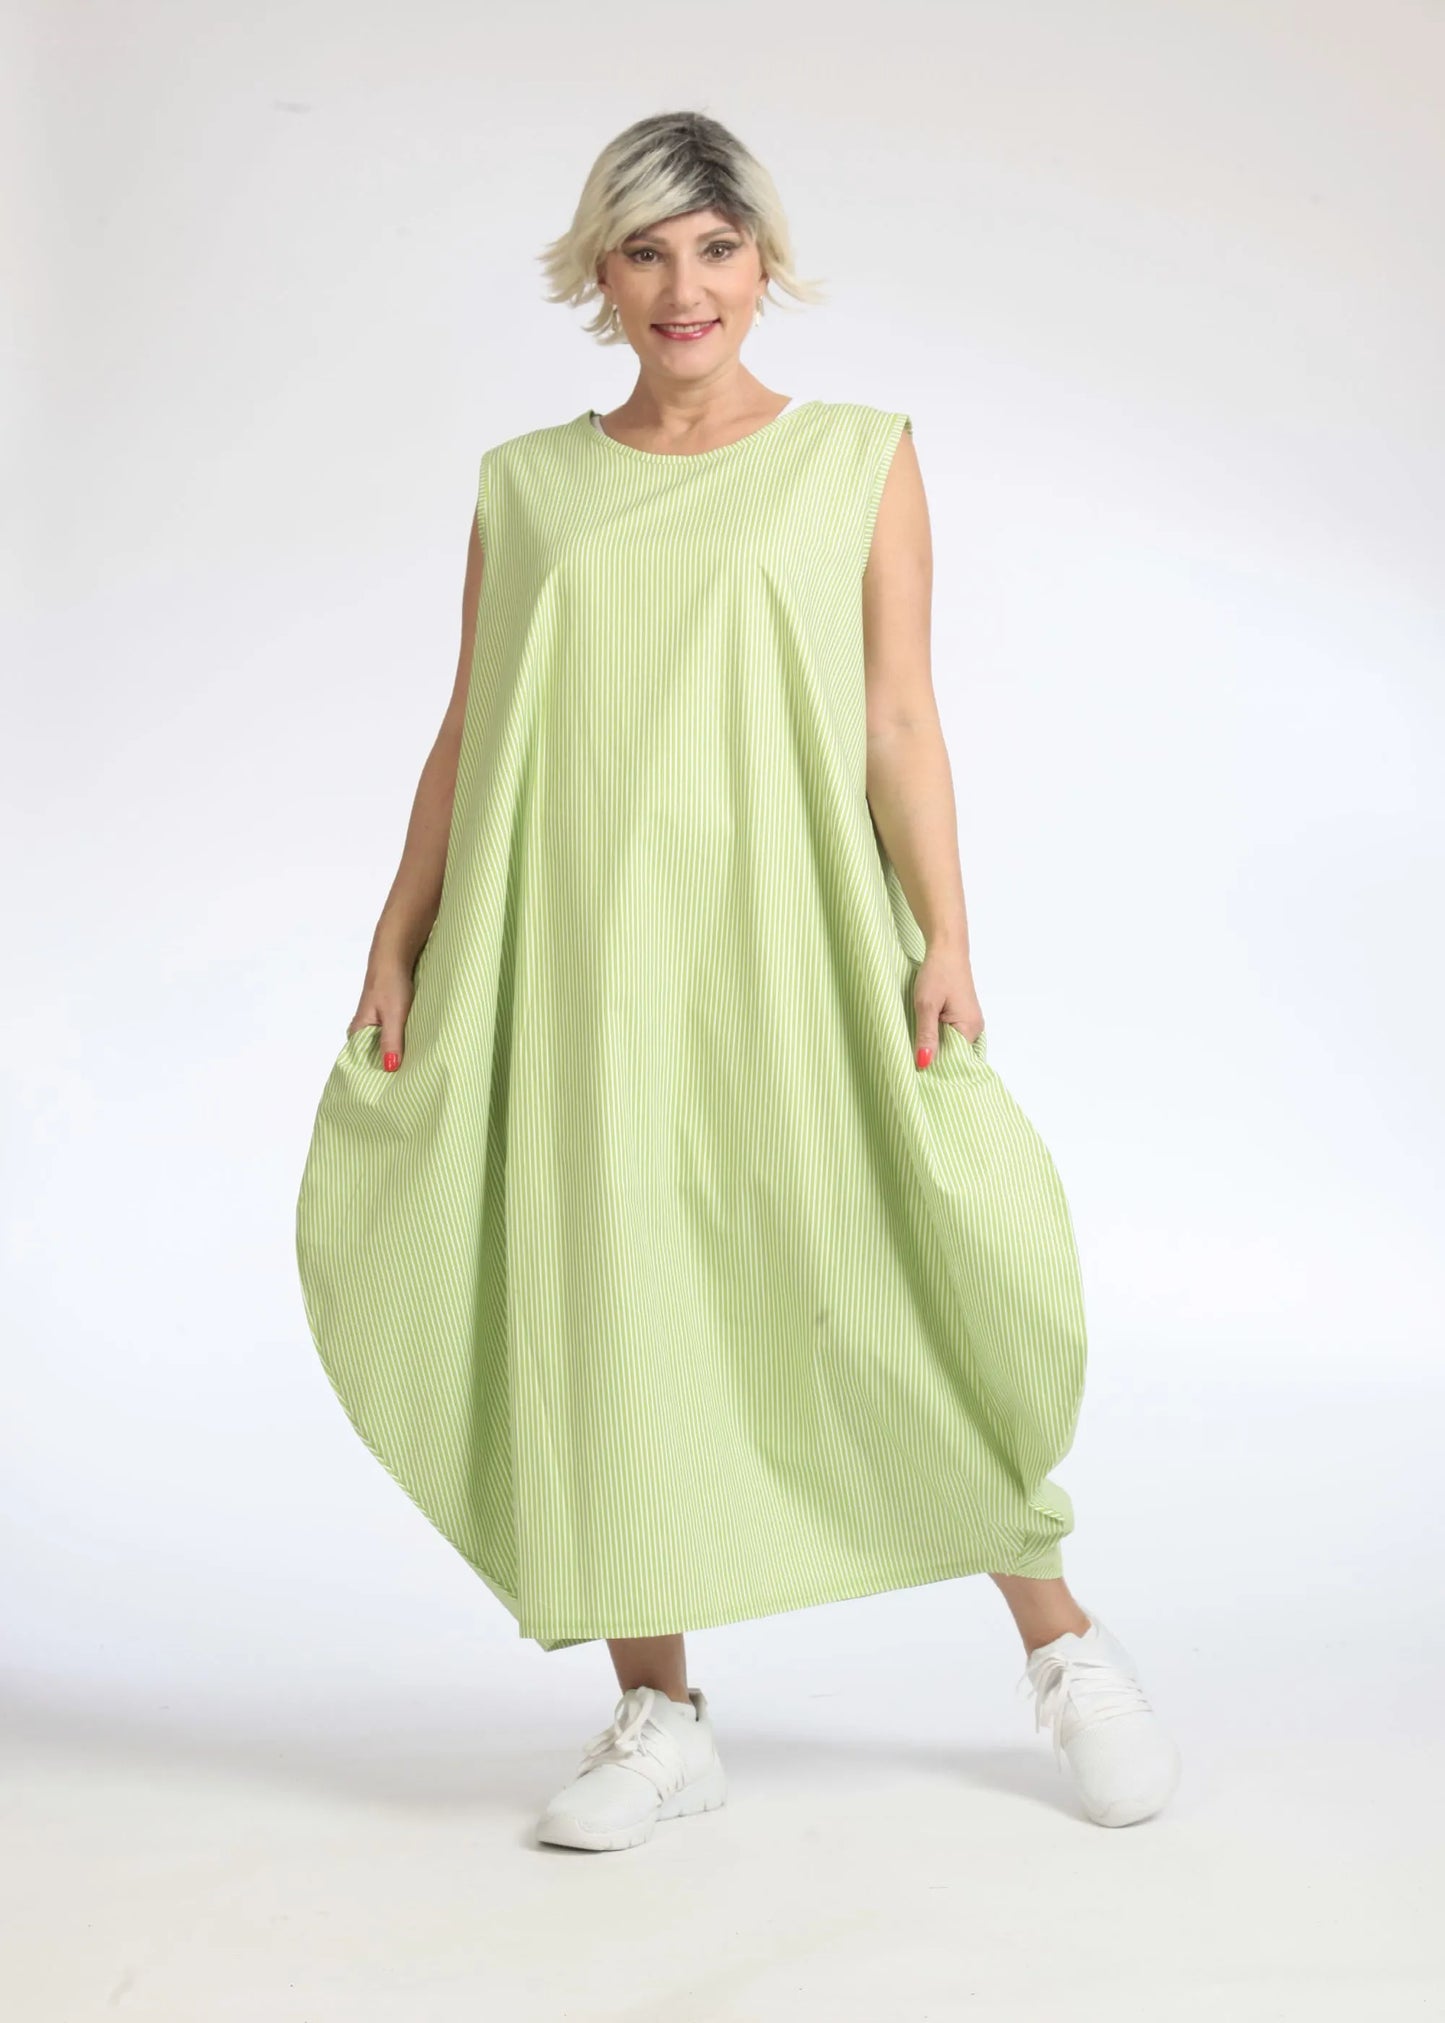 Sommer Kleid in Ballon Form aus glatter Popeline Qualität, Verena in Apfelgrün-Weiß